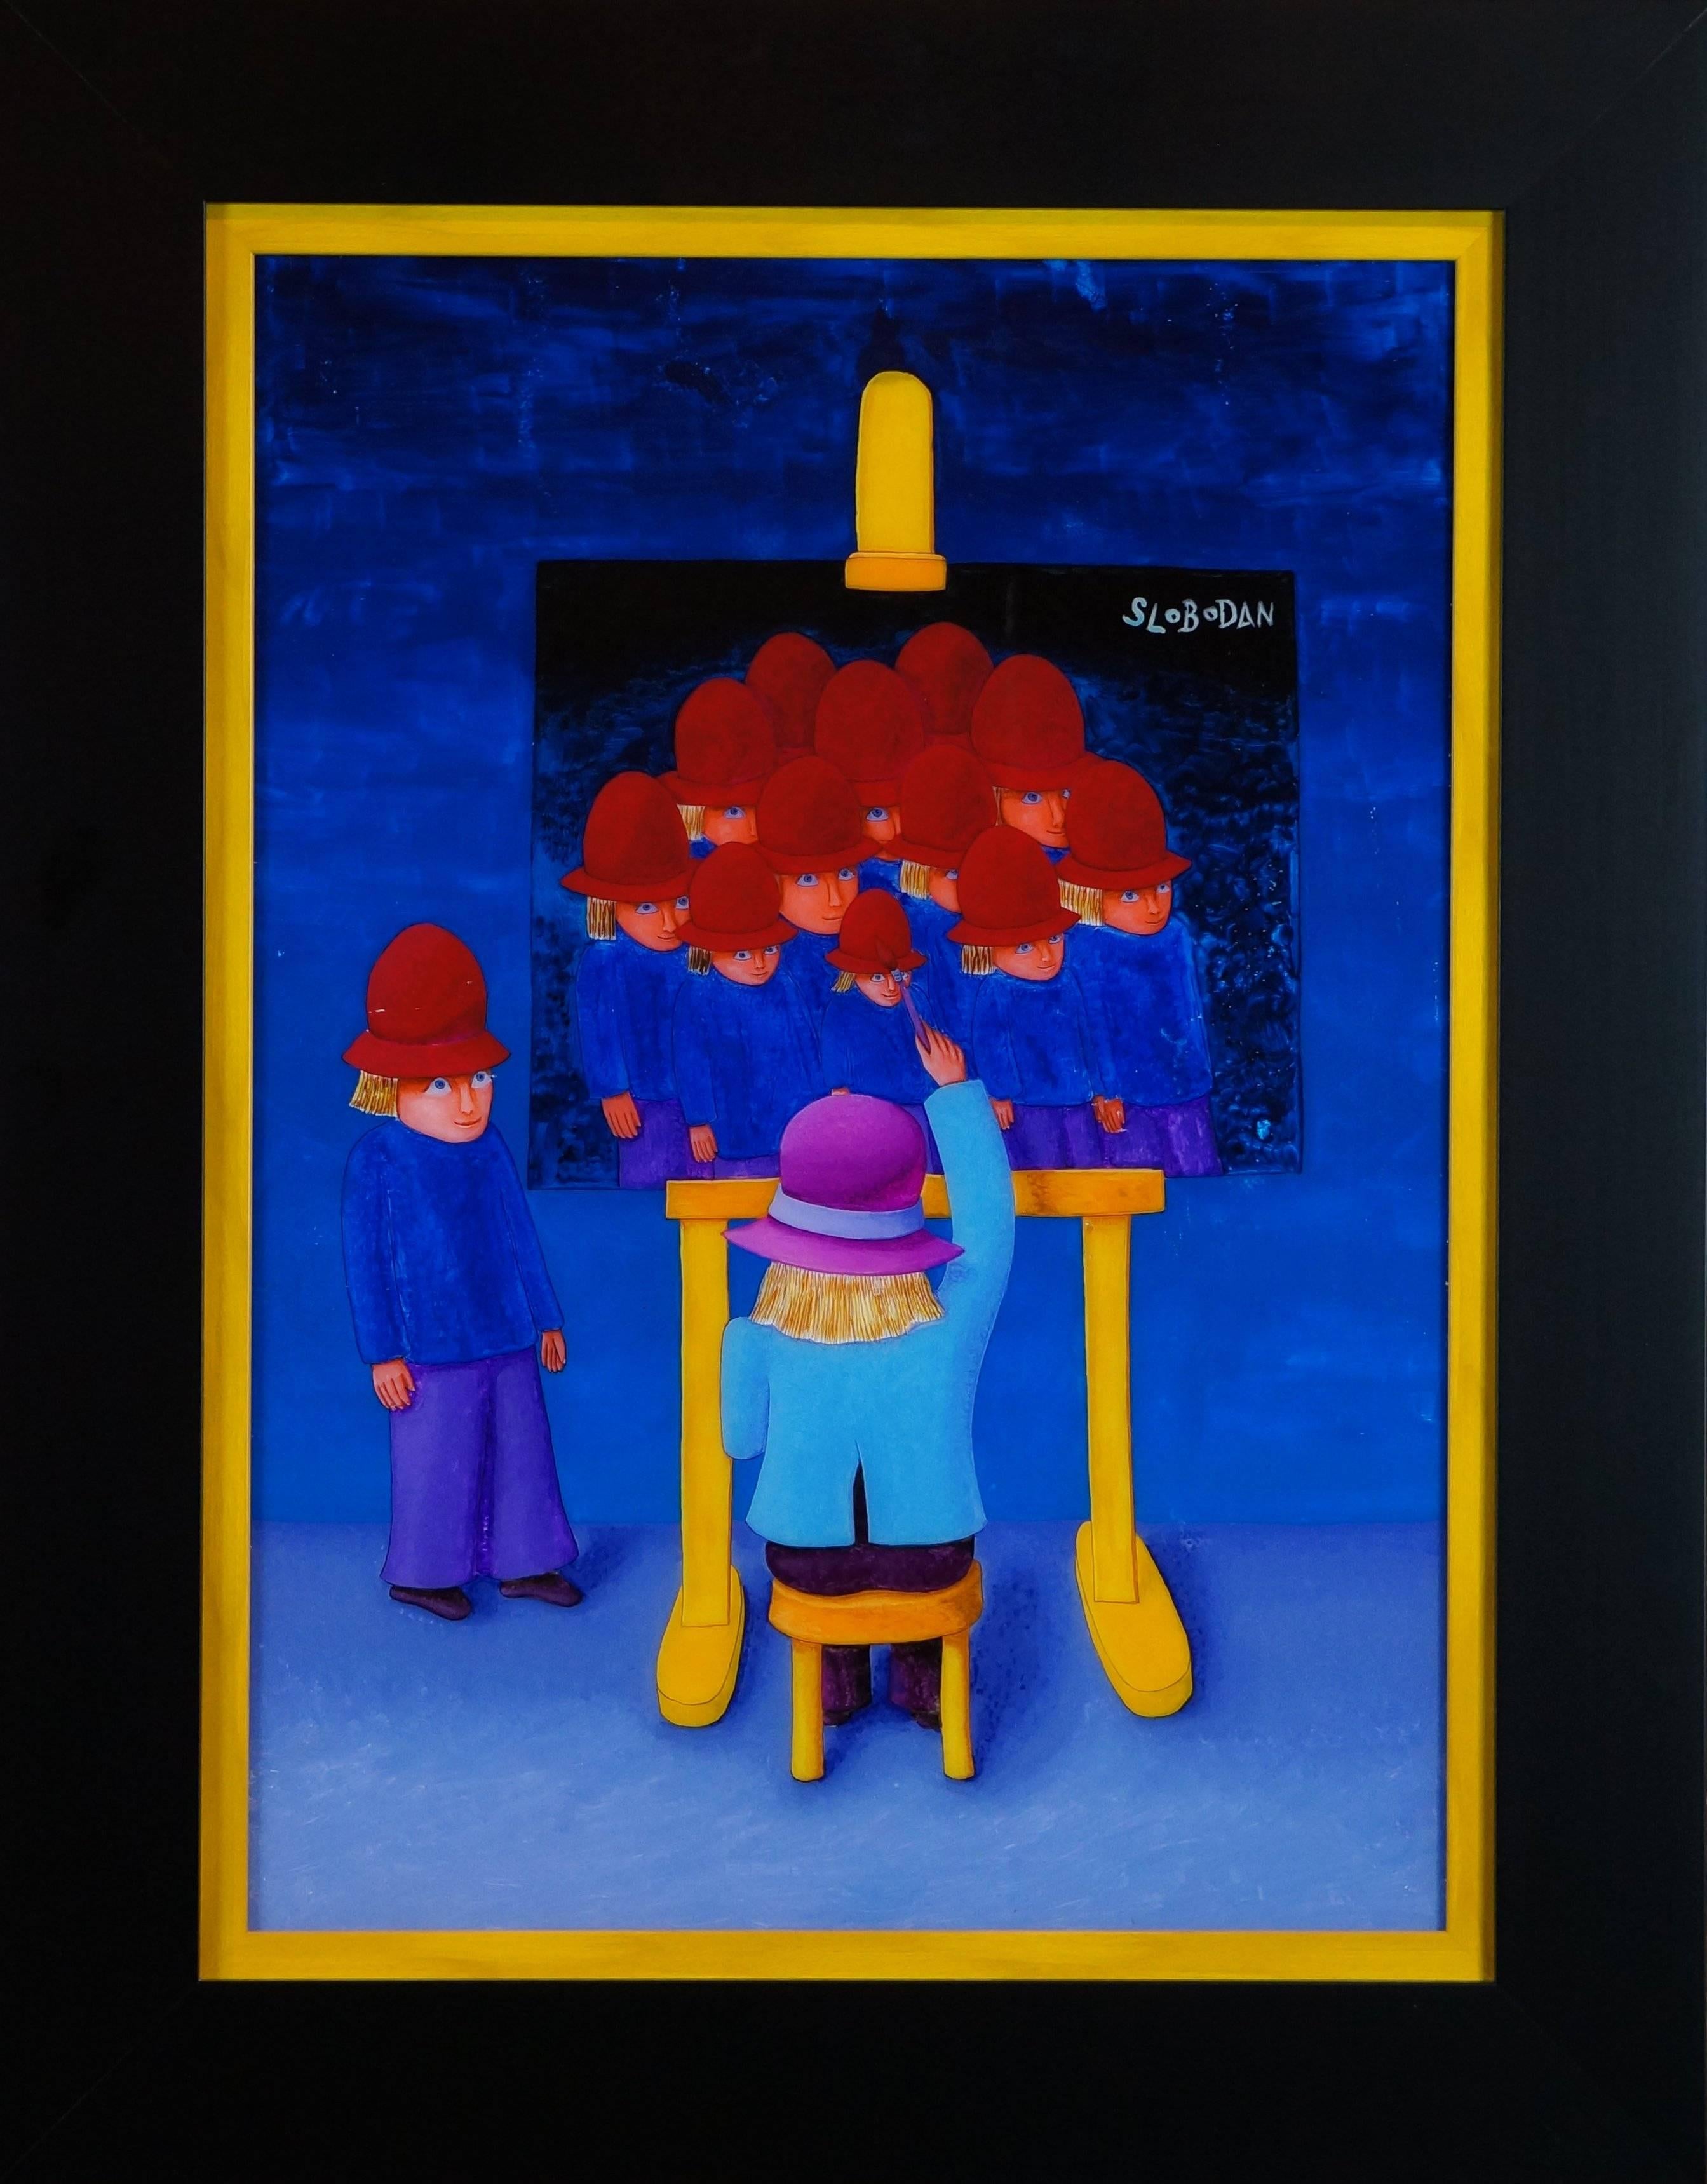 Figurative Painting Sblobodan - Dream Of School (Le rêve de l'école) - Huile sur toile, cm. 52x76, encadrée